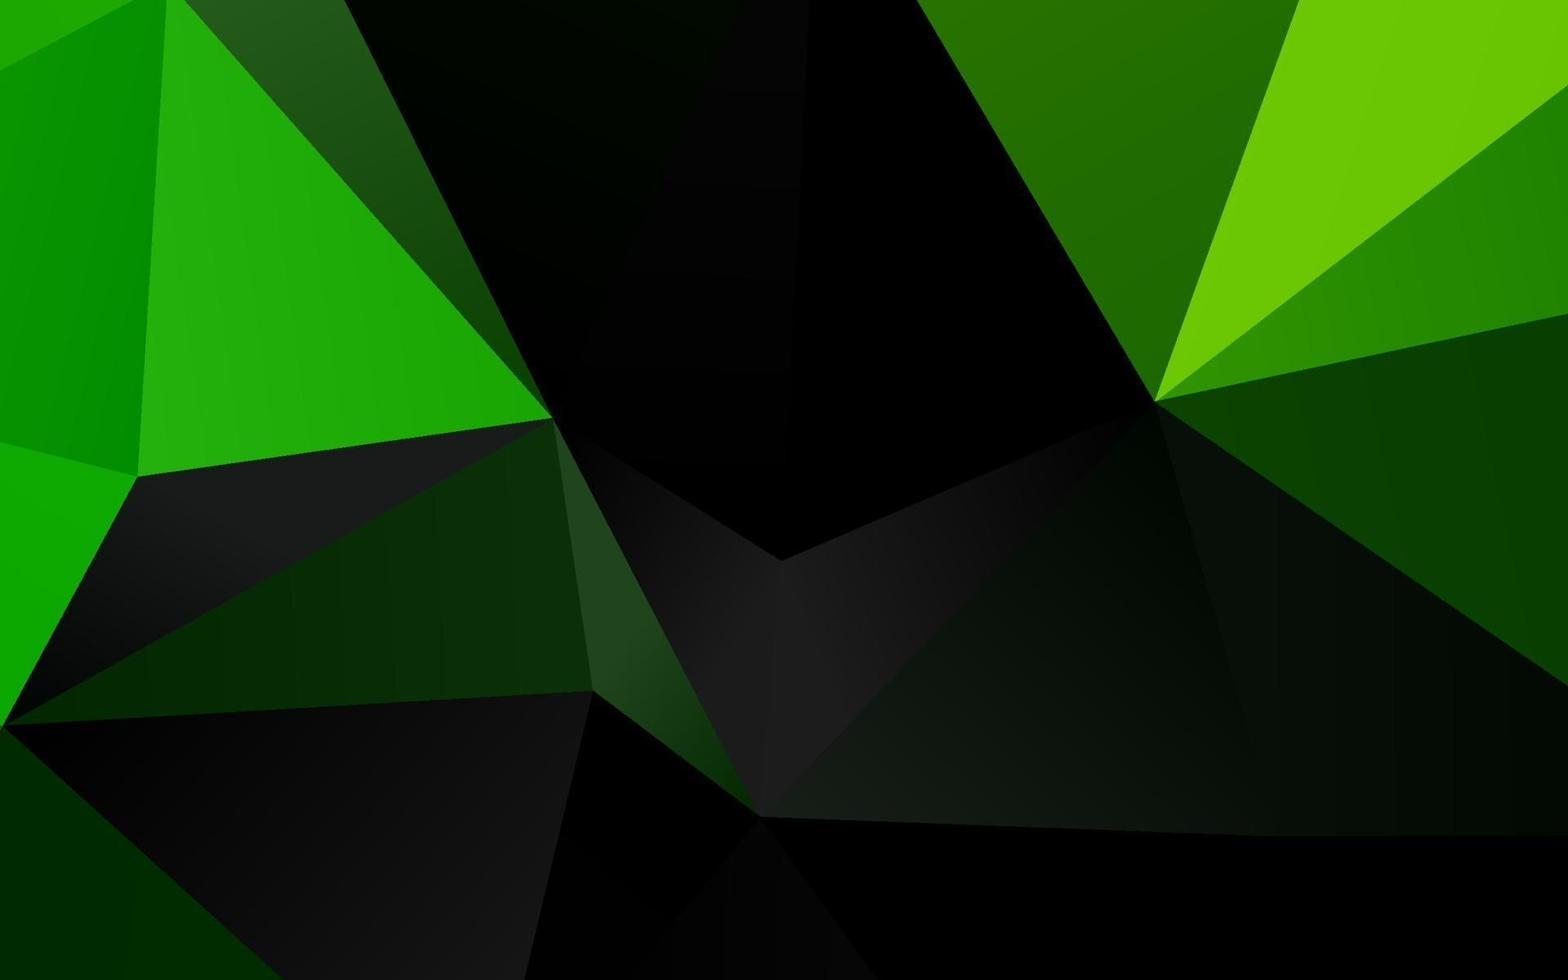 sfondo astratto poligono vettoriale verde chiaro.